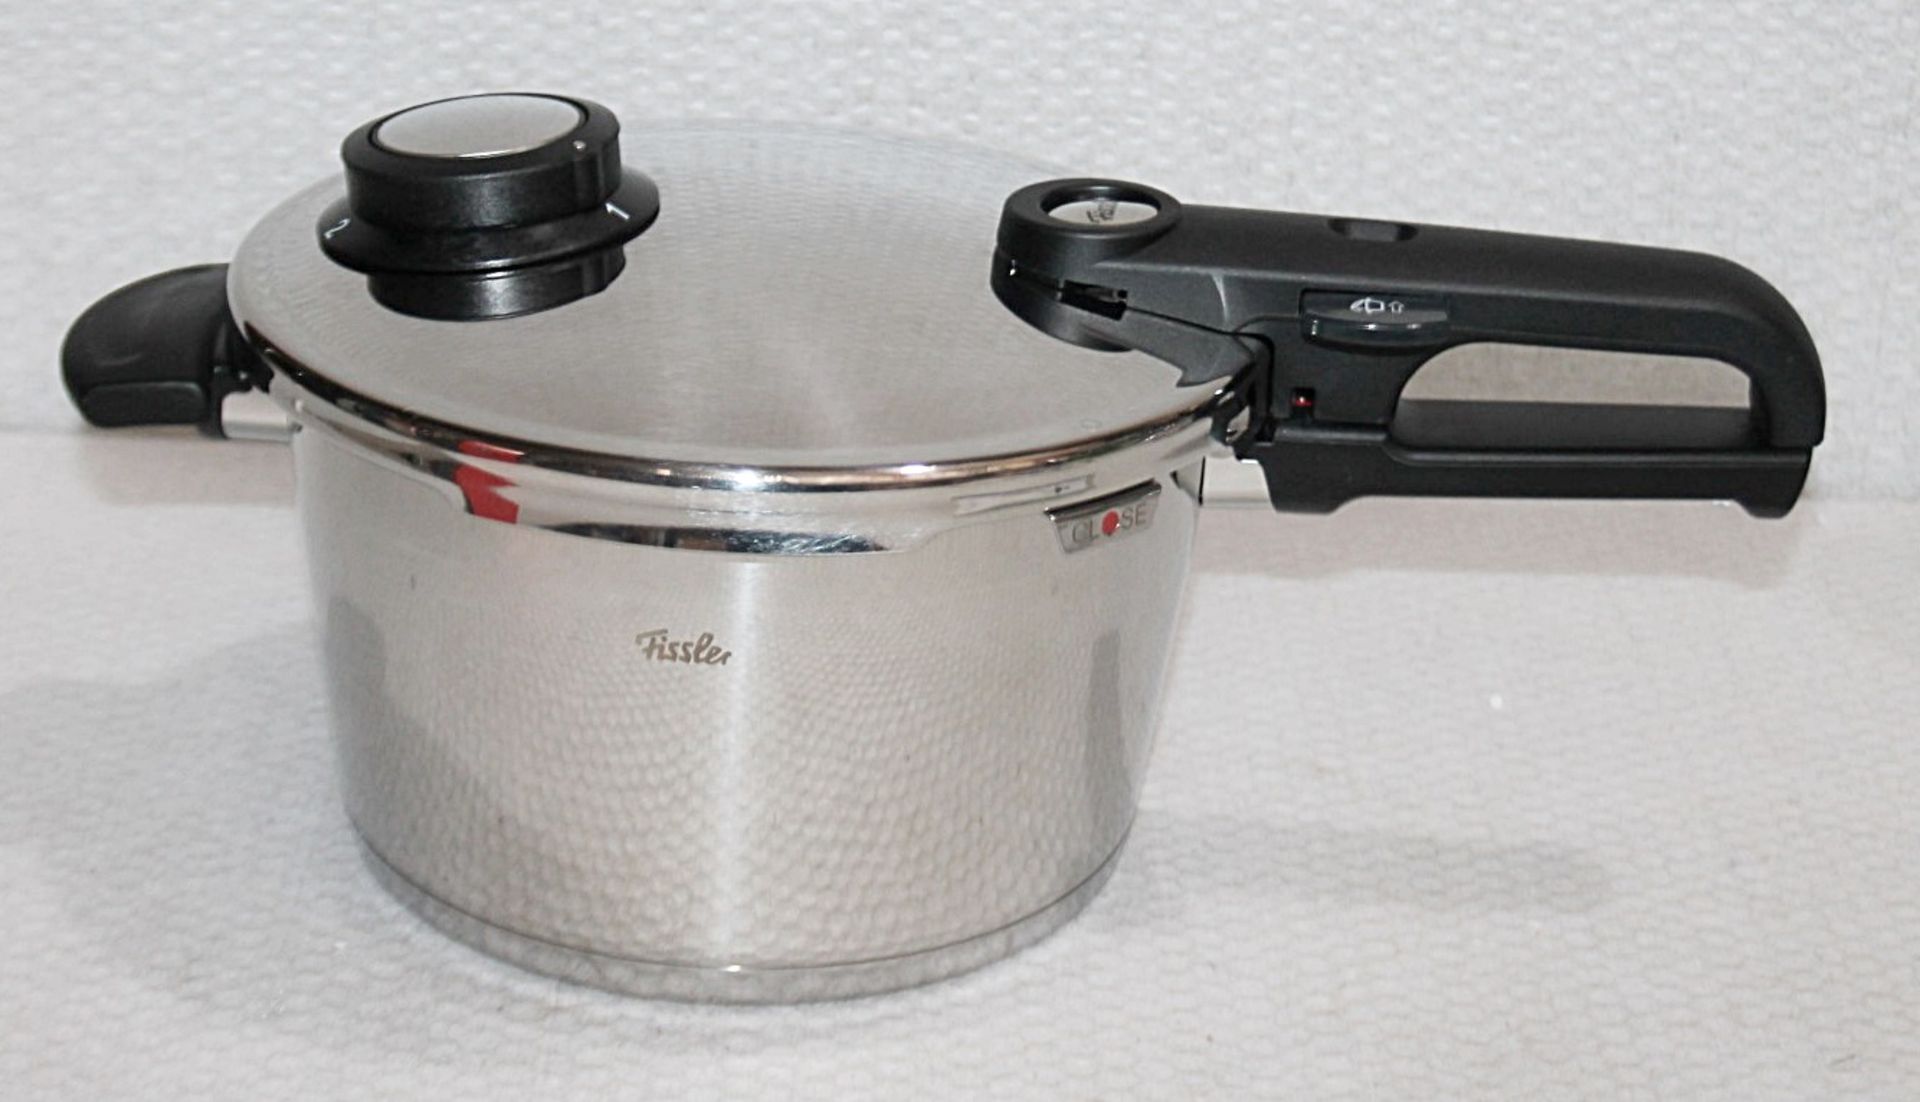 1 x FISSLER Vitavit Premium Pressure Cooker with Inset (22cm) - Original Price £155.00 - Unused - Image 3 of 11